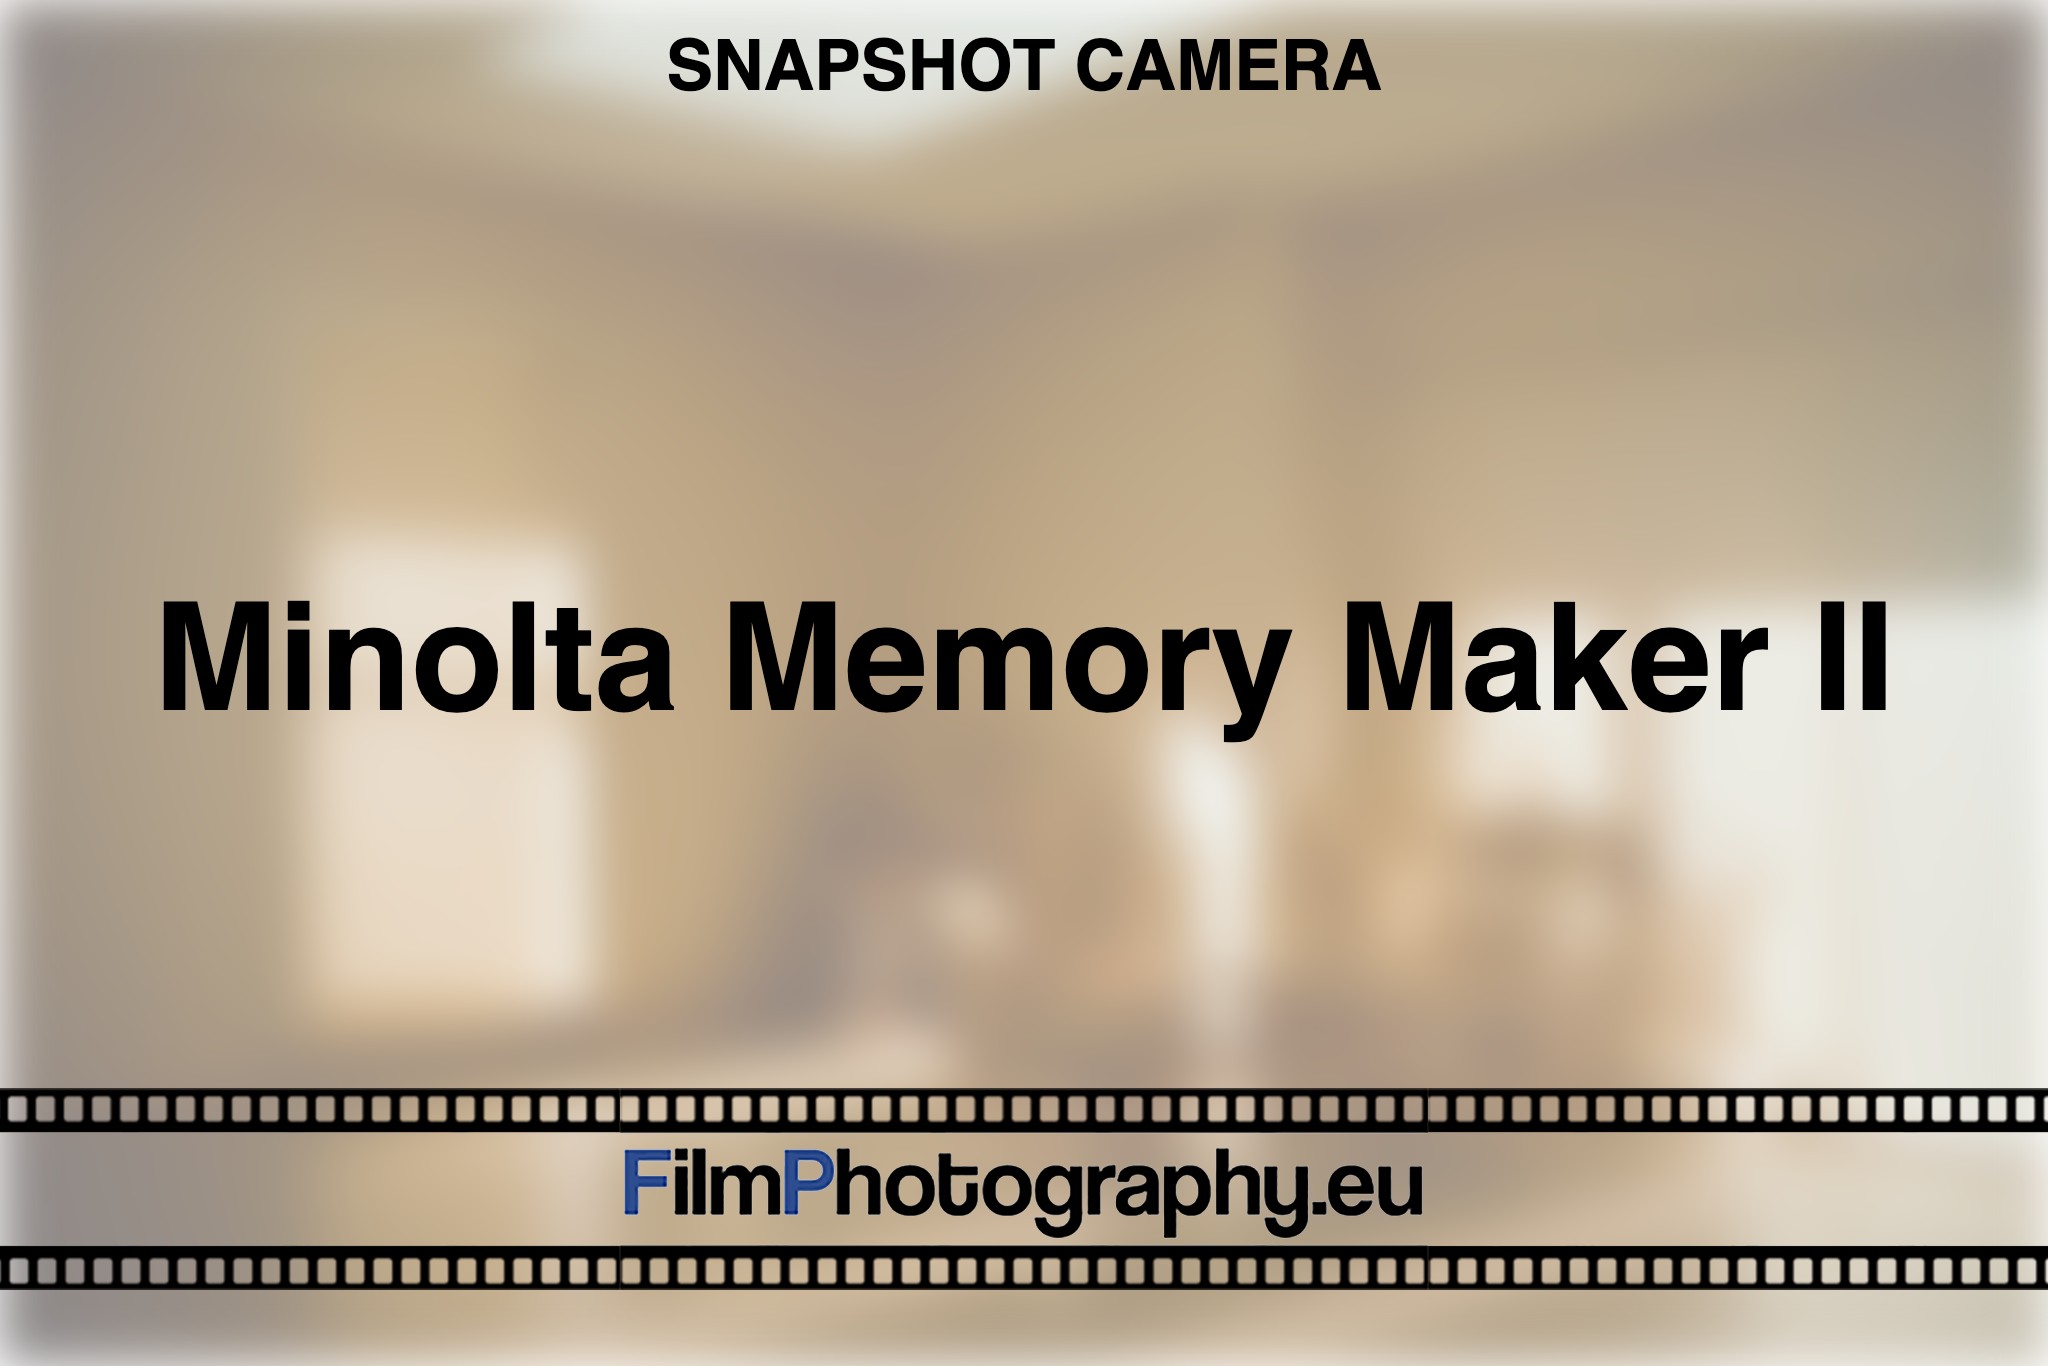 minolta-memory-maker-ii-snapshot-camera-bnv